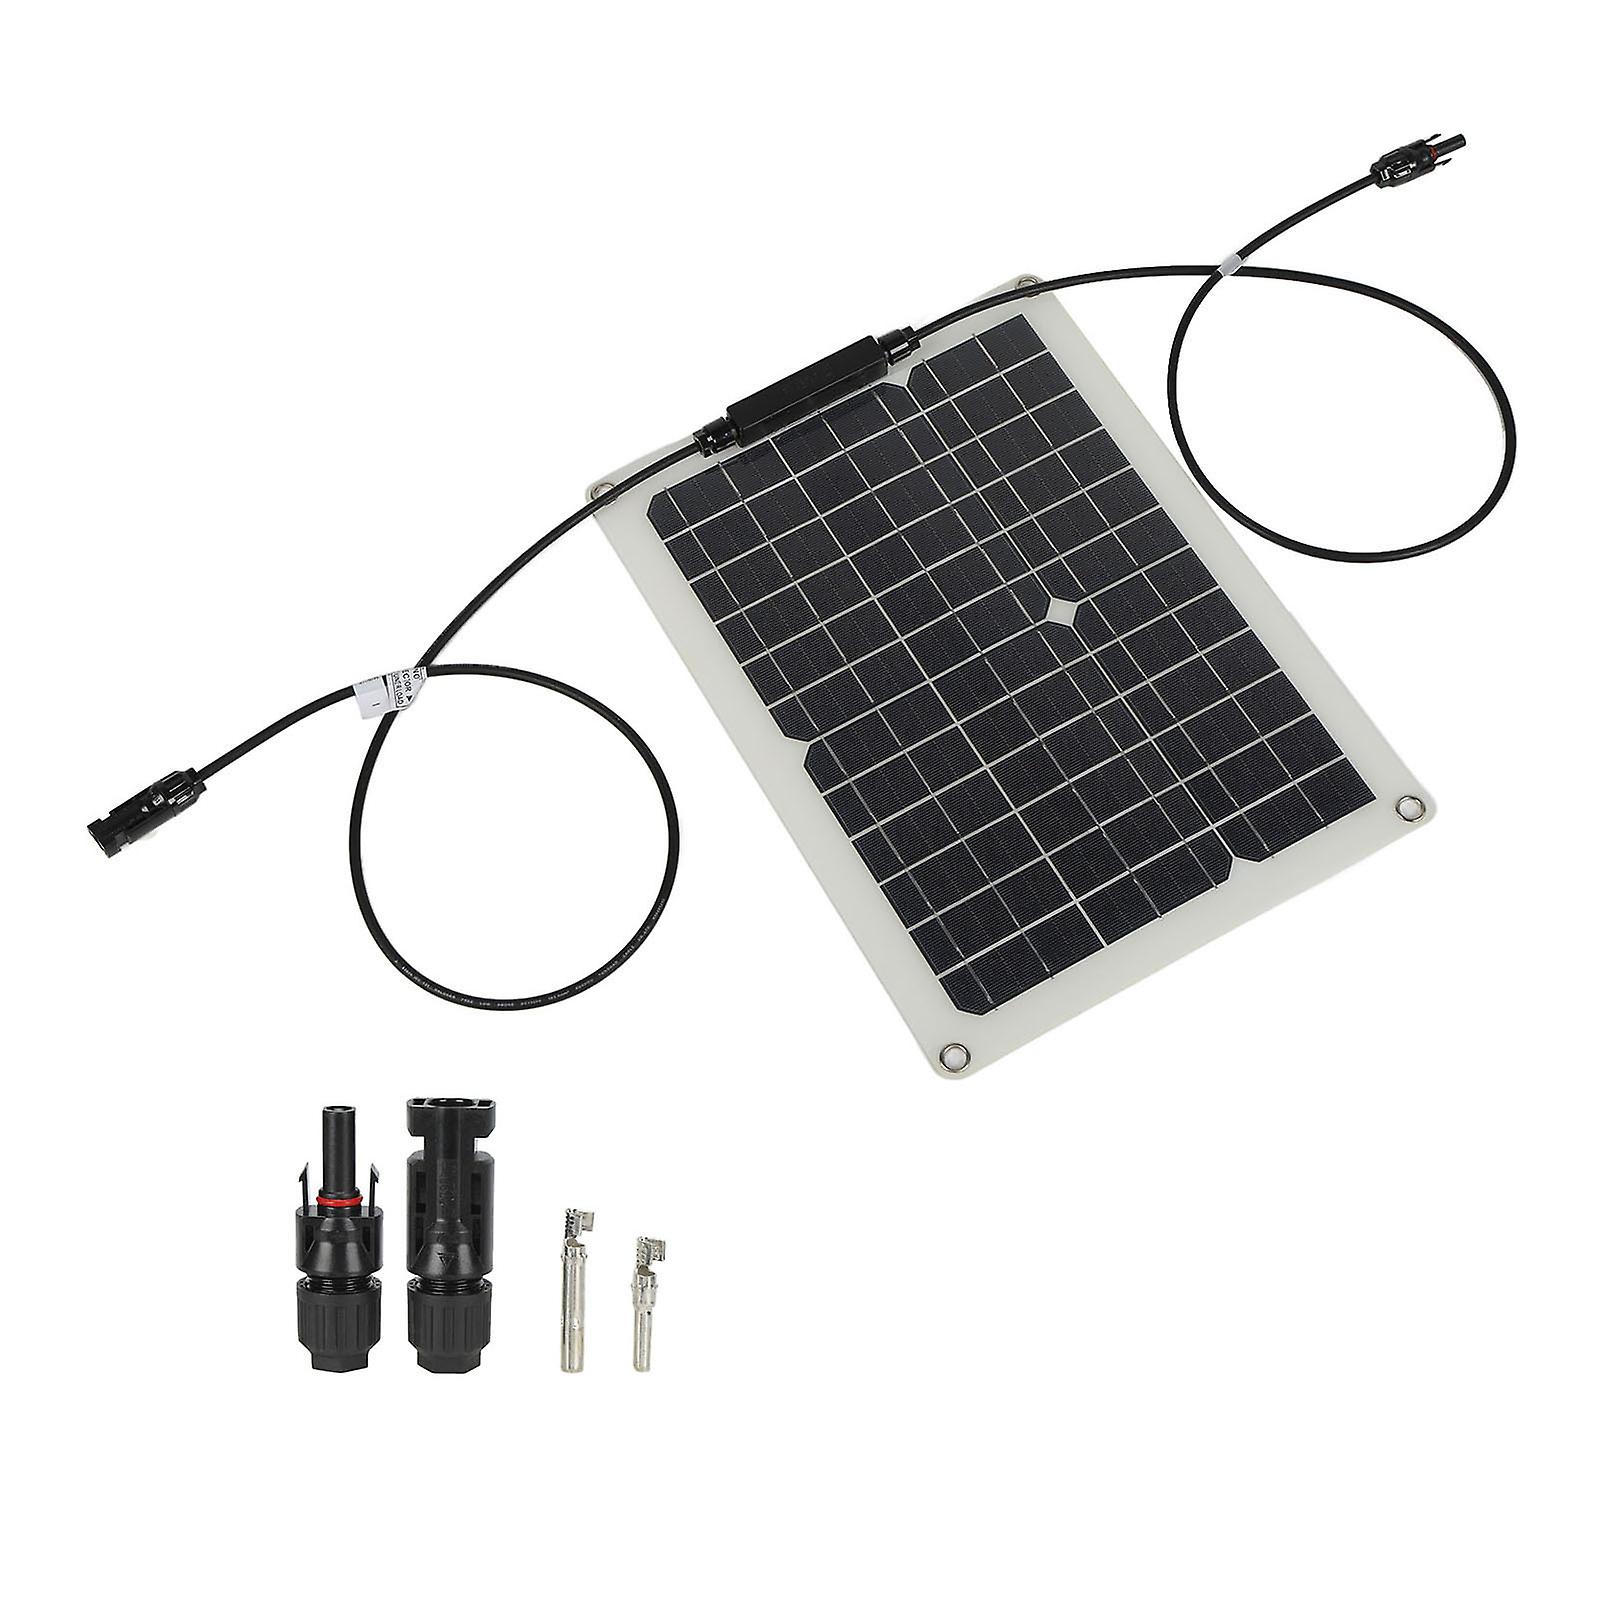 15w 18v Solar Cell Panel Monocrystalline Solar Panel Portable Solar Panel Kit For Car Boatsolar Panel